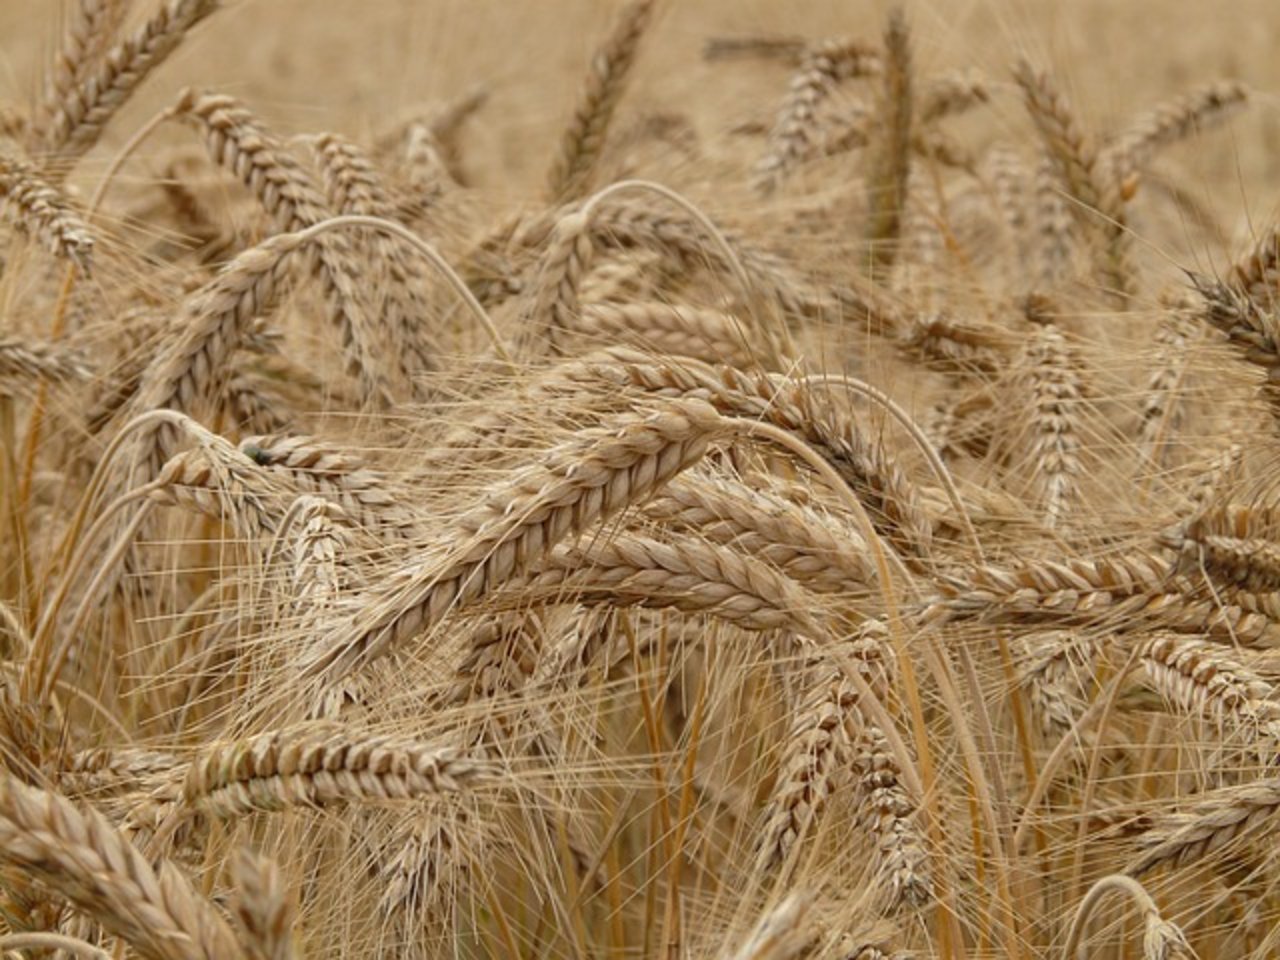 Russland könnten bis zu 39 Millionen Tonnen Getreide exportieren. (Bild pixabay)